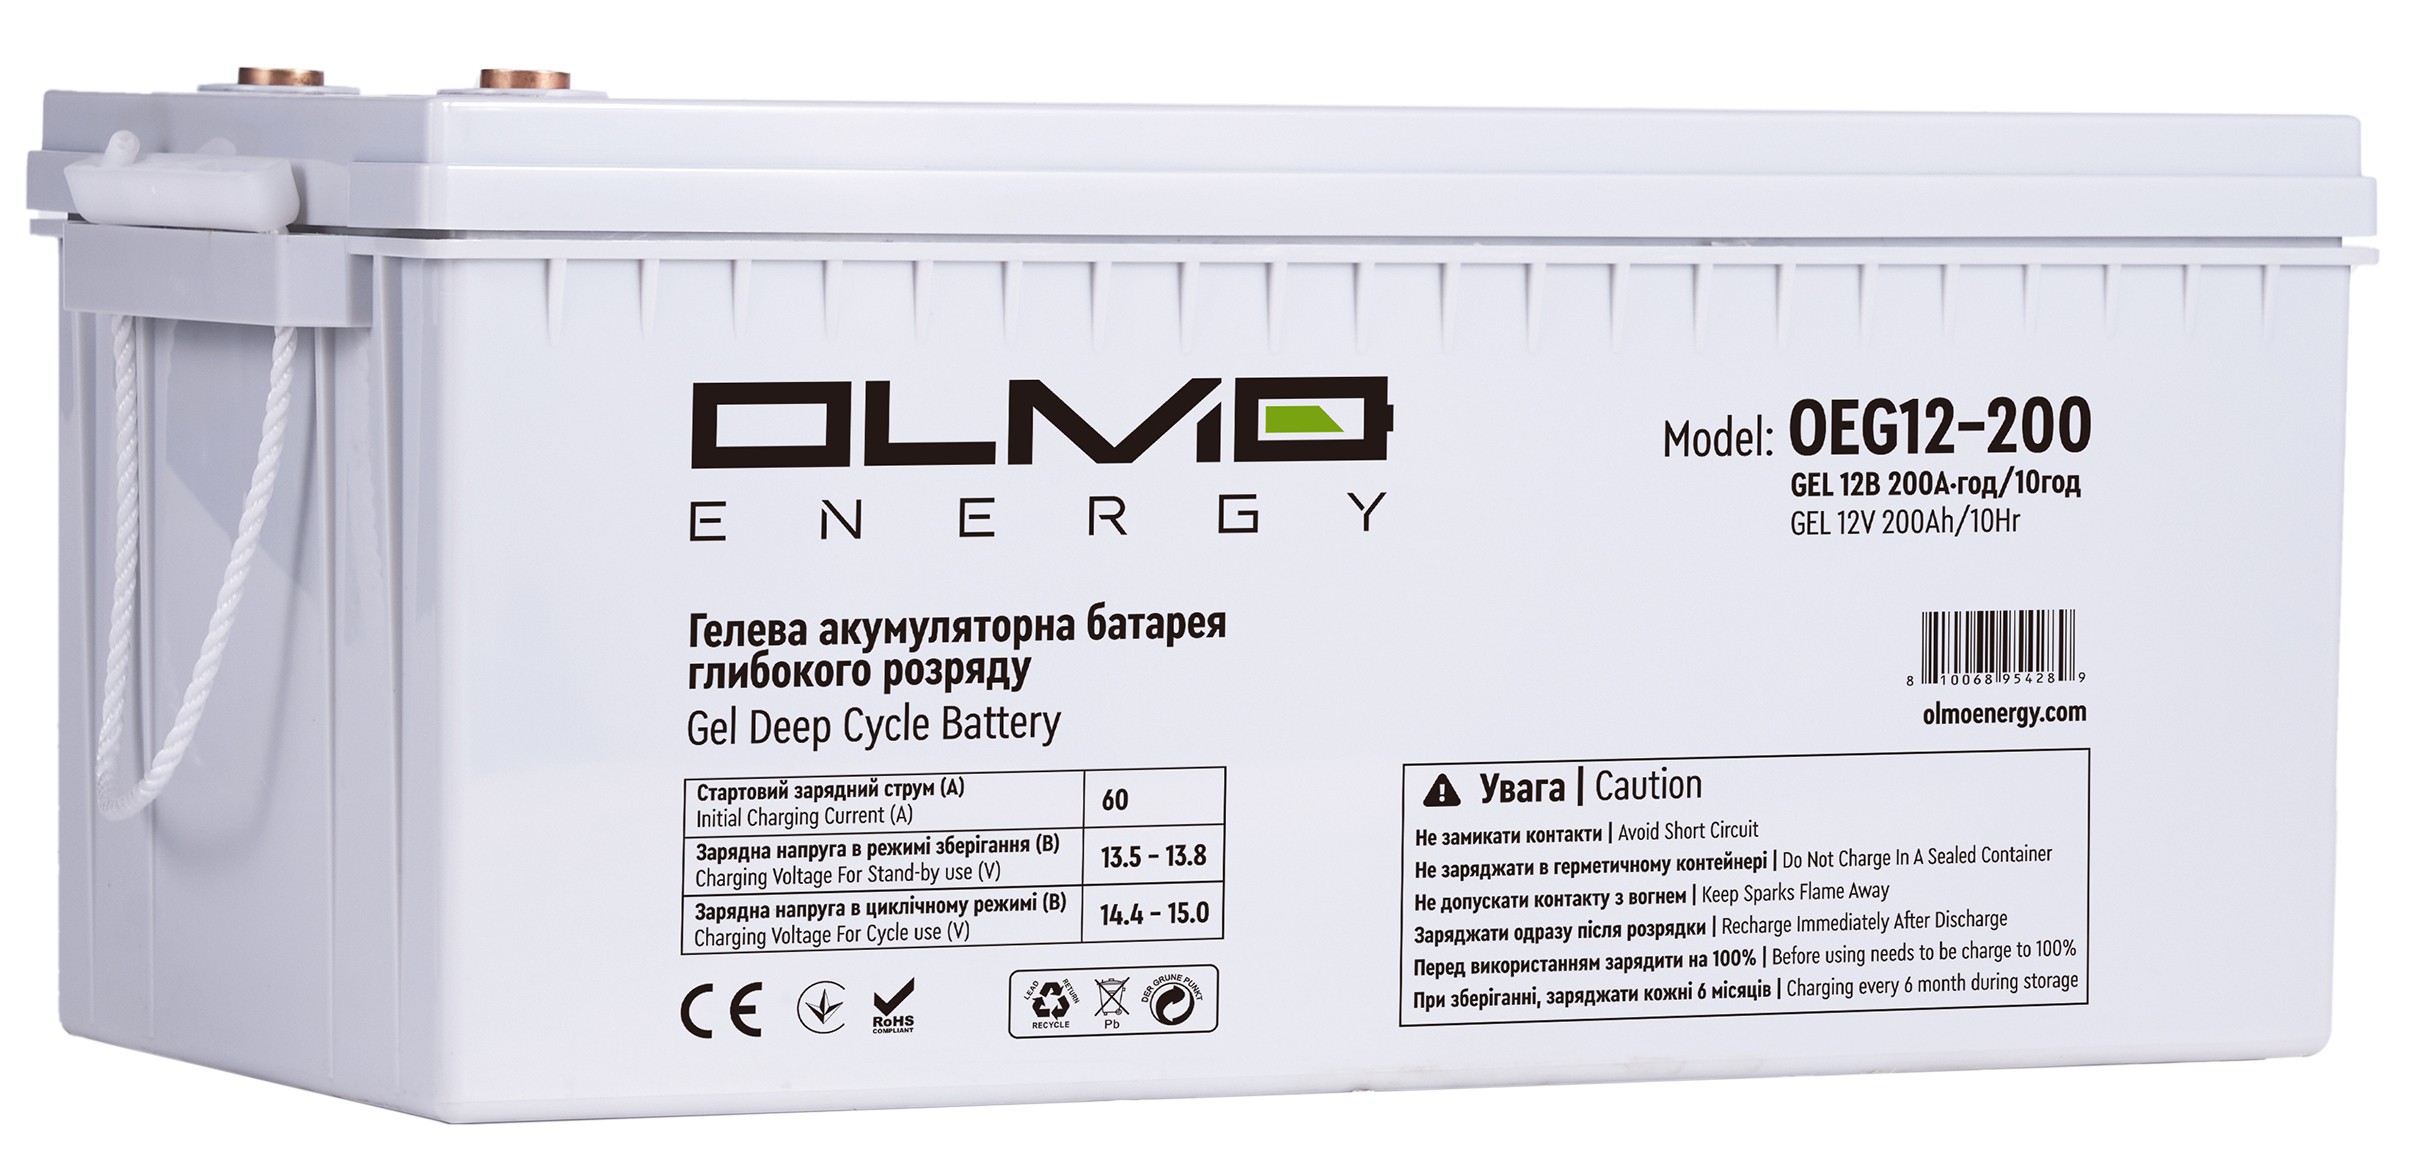 Цена аккумуляторная батарея OLMO Energy OEG12-200 в Запорожье